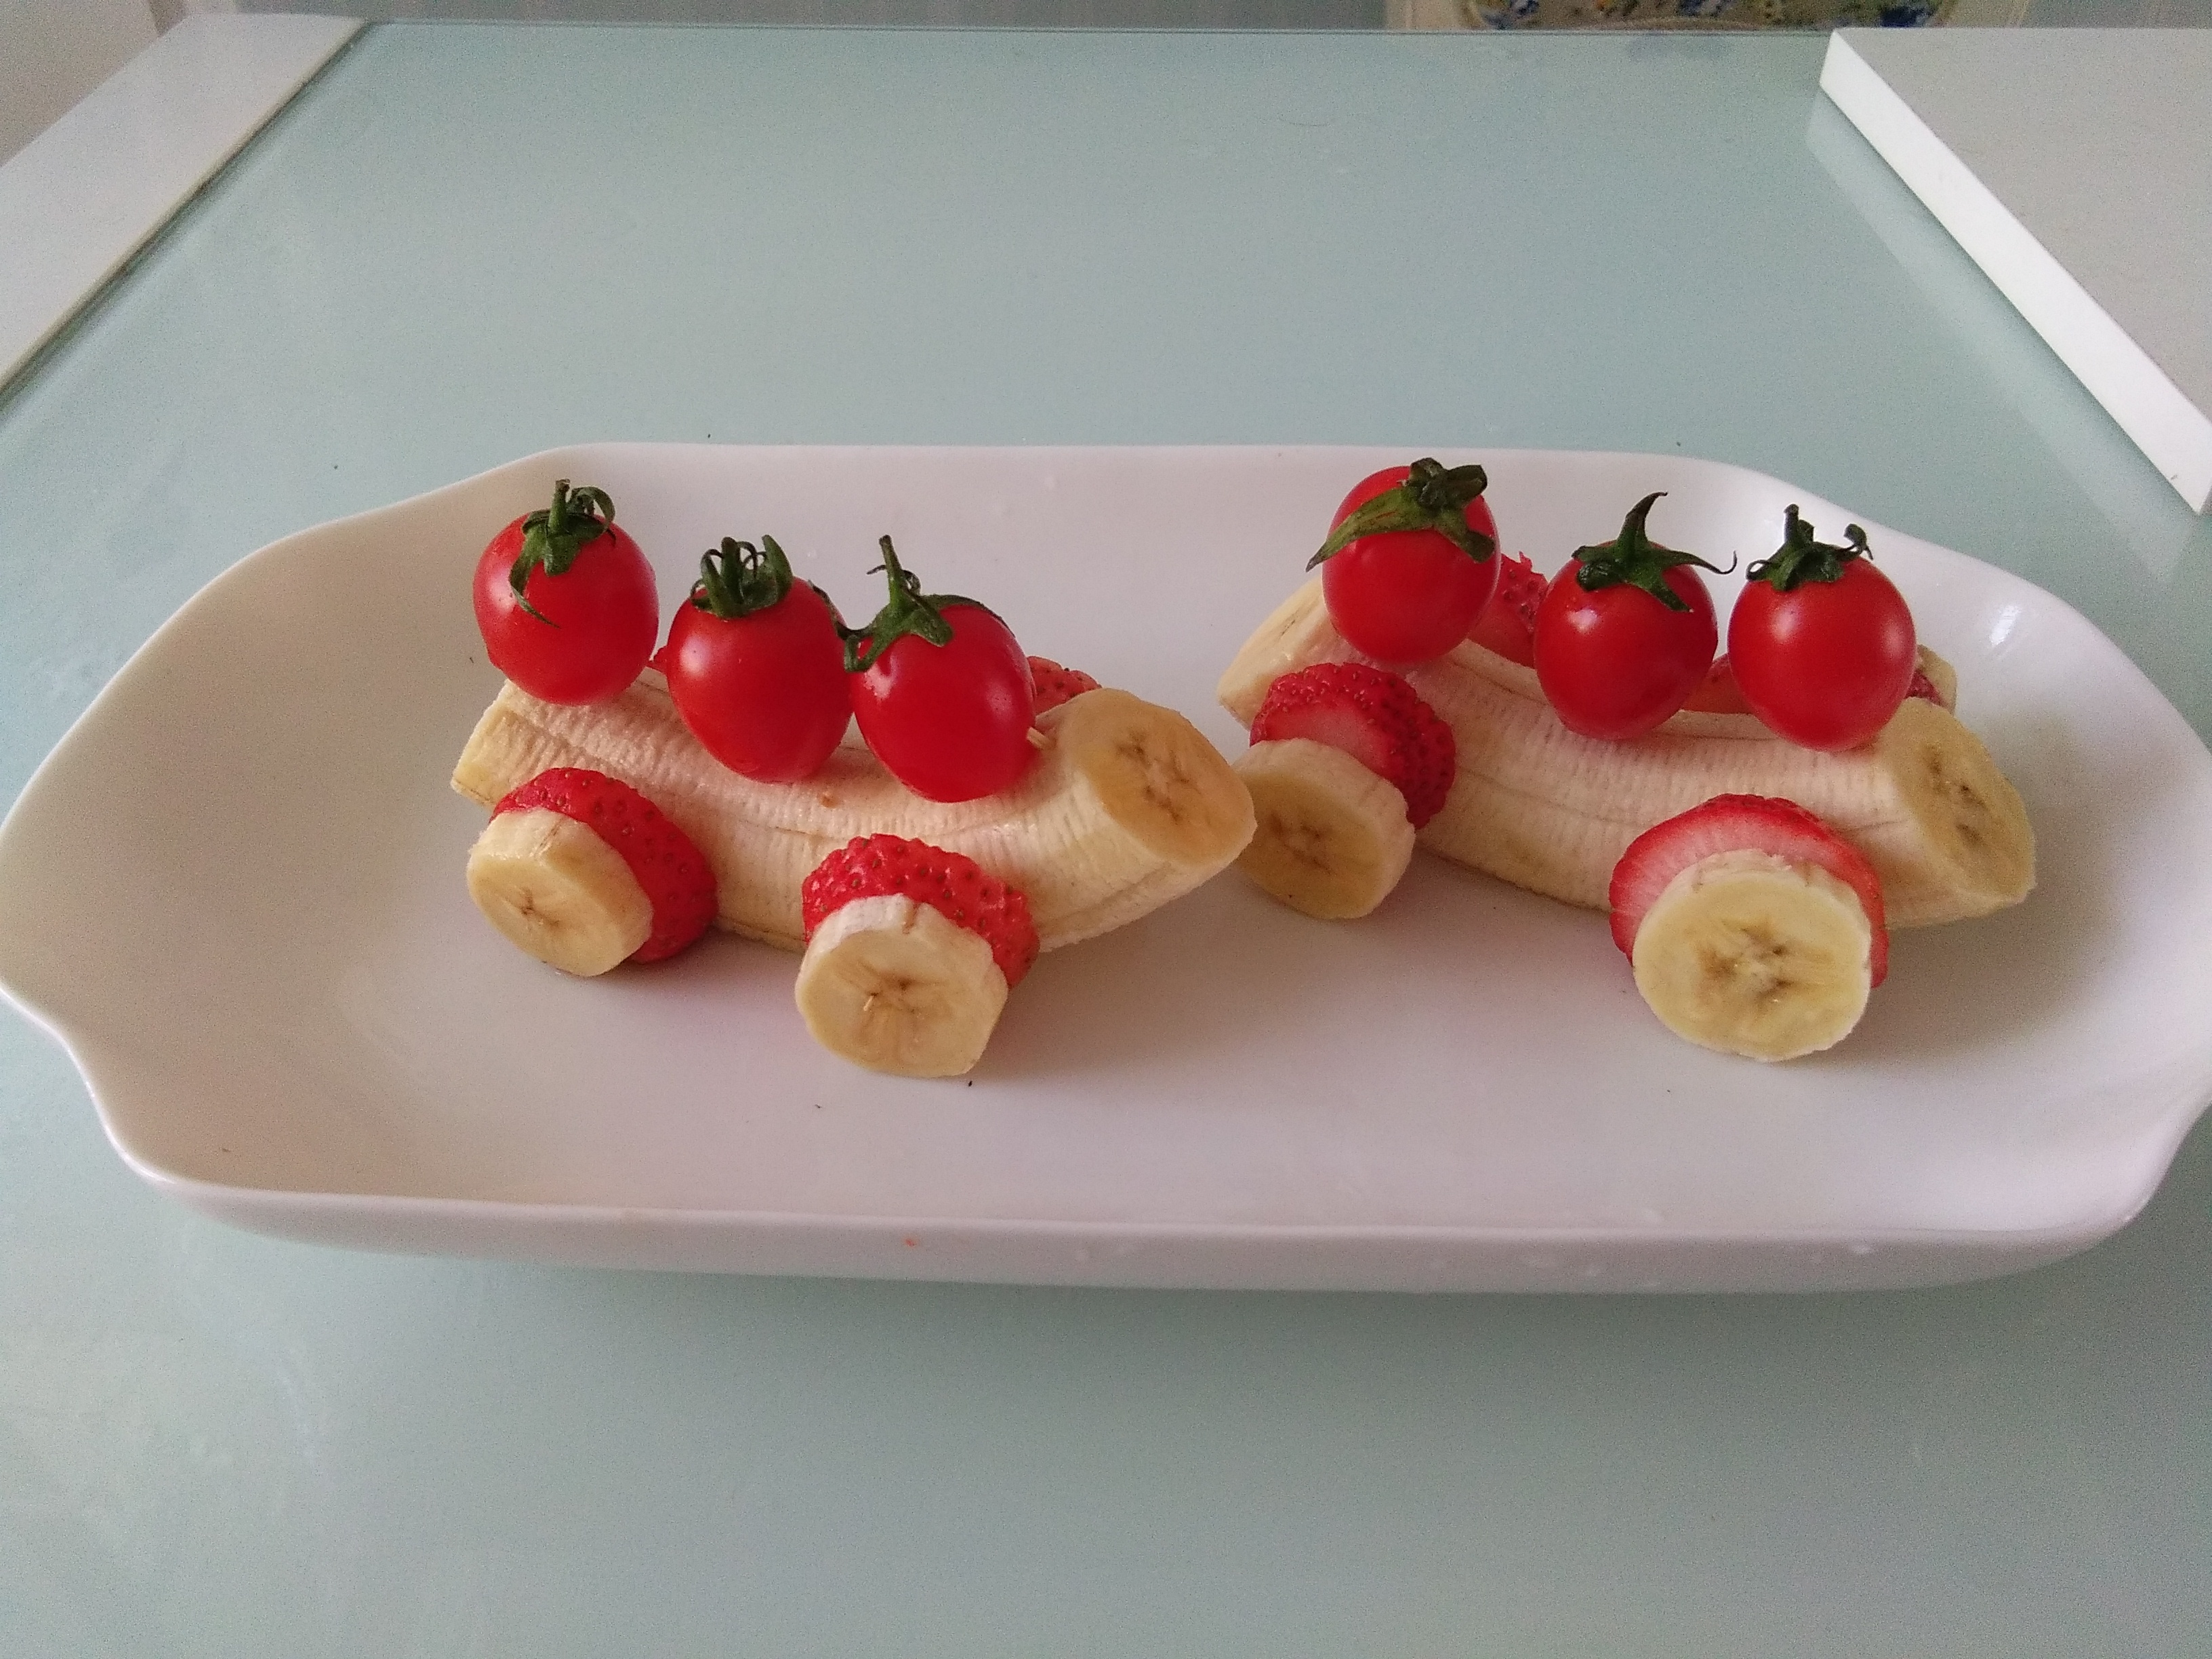 2根香蕉, 两个草莓, 可以为自己女友做一份非常甜蜜美味的水果拼盘